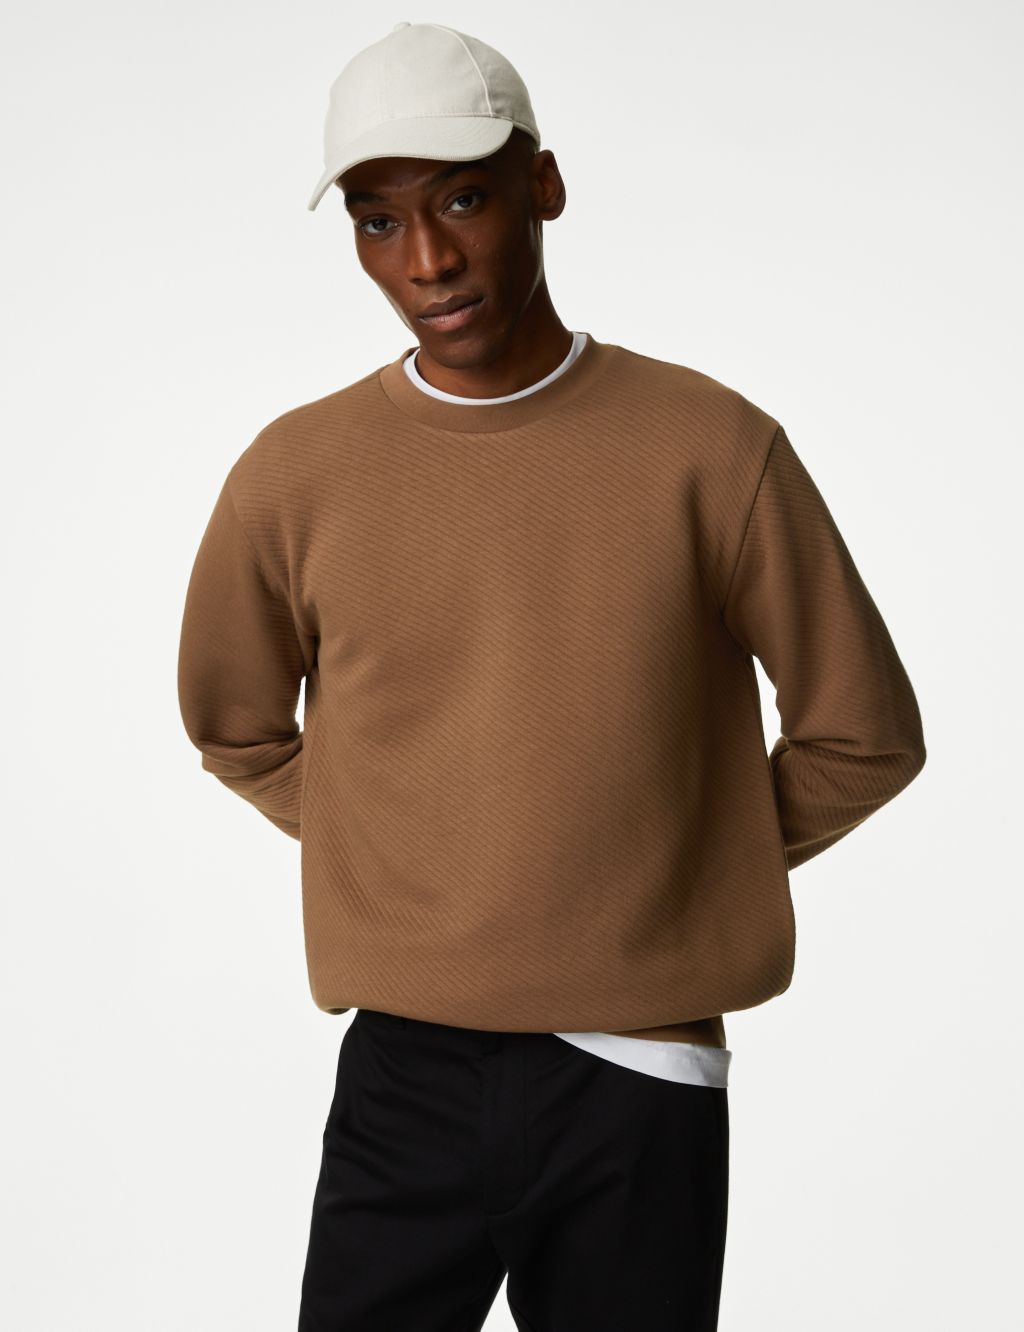 Cotton Rich Textured Crewneck Sweatshirt image 1